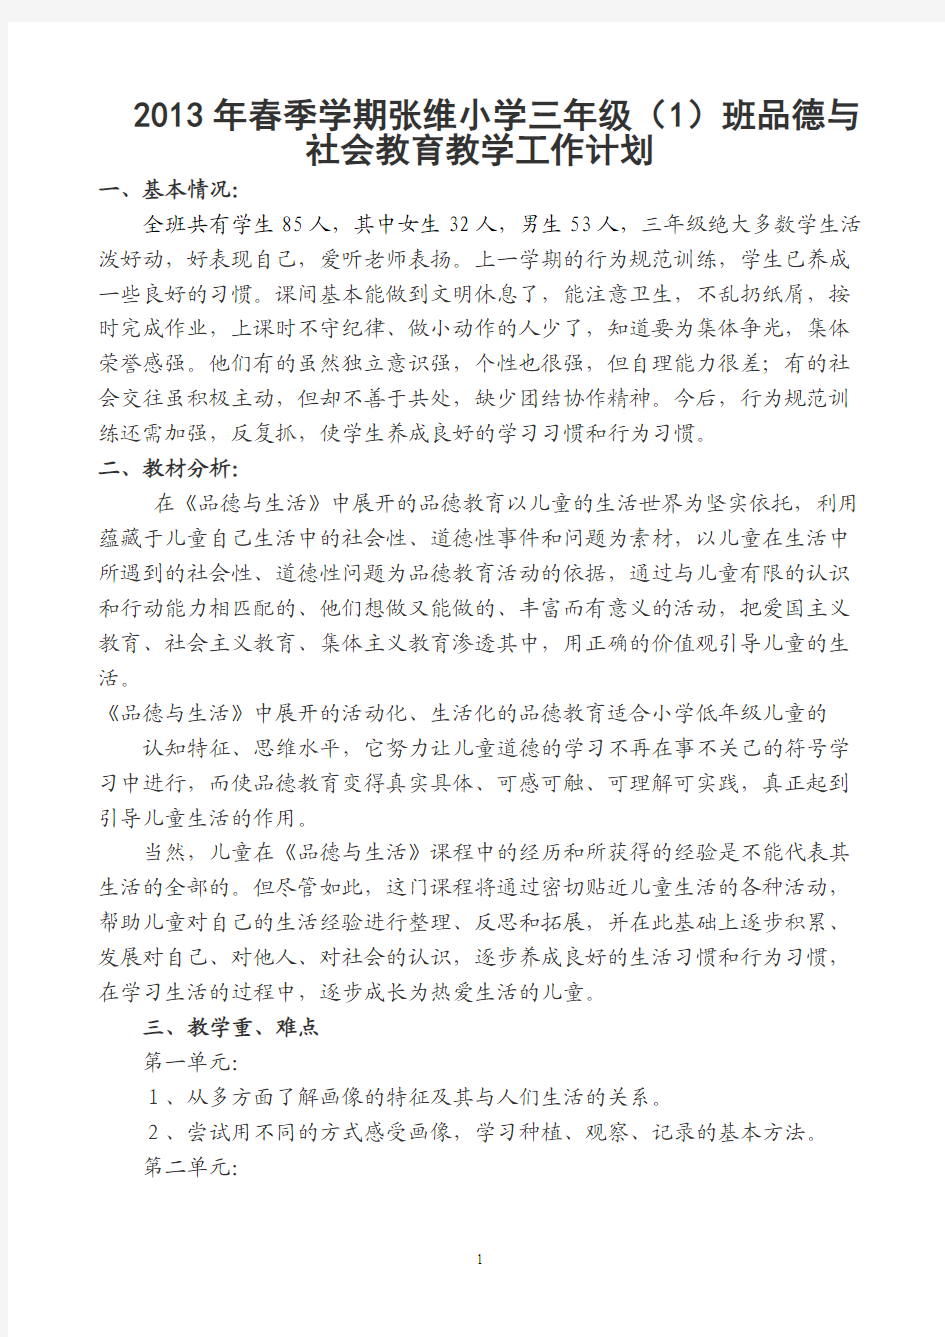 张维小学2013年三年级春季学期品德与社会